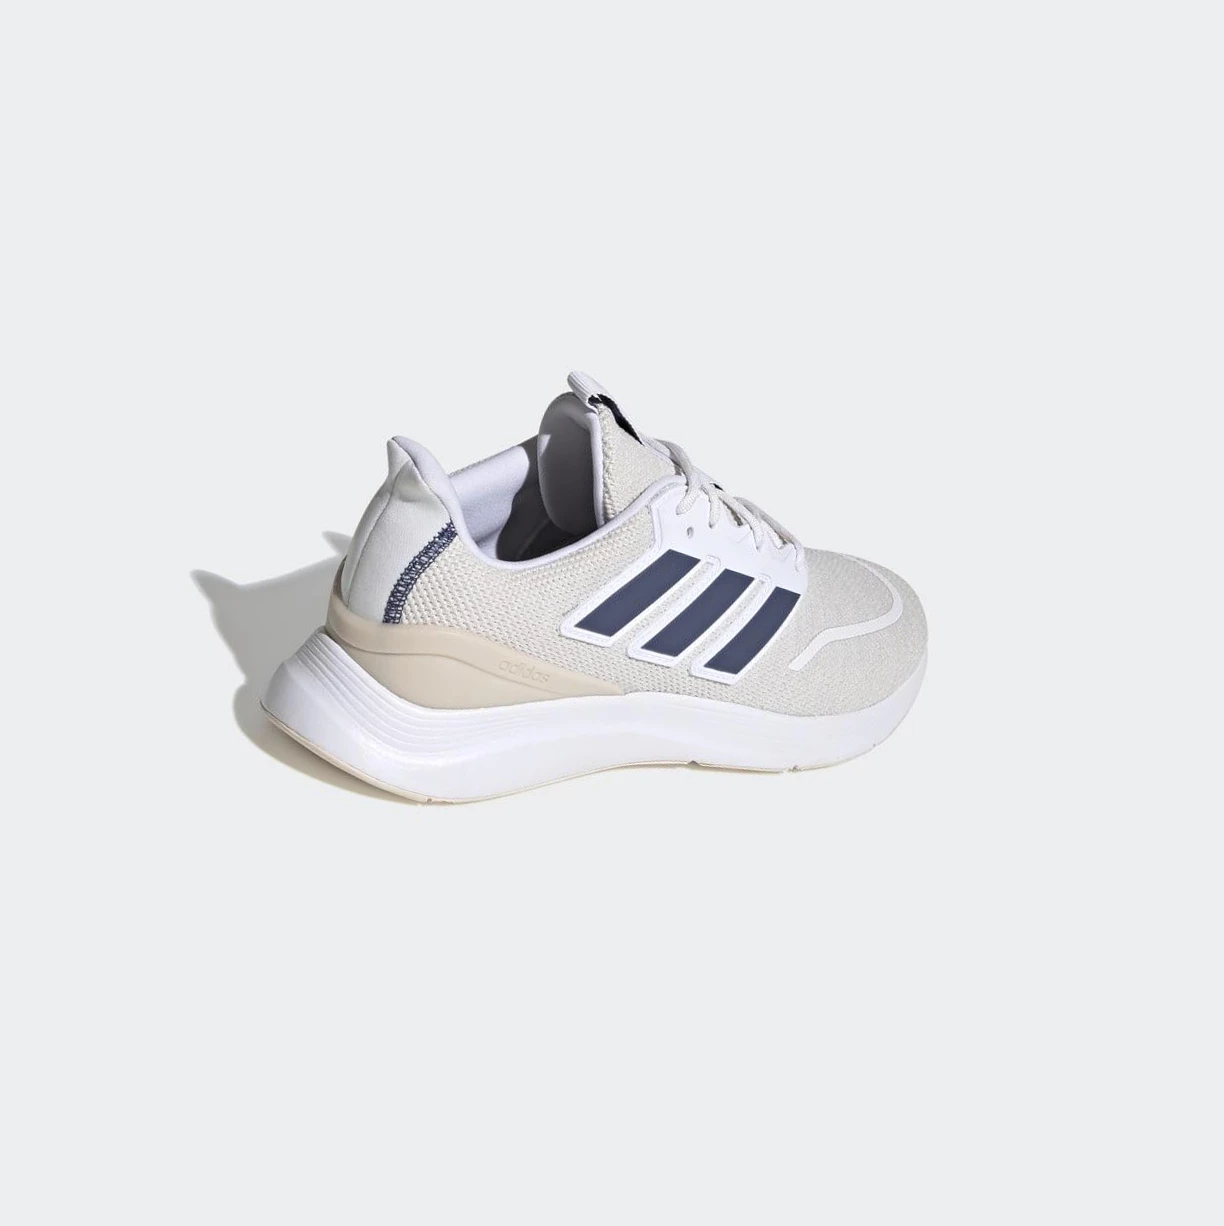 Bezecke Topanky Adidas Energyfalcon Panske Biele | 462SKJBONMV